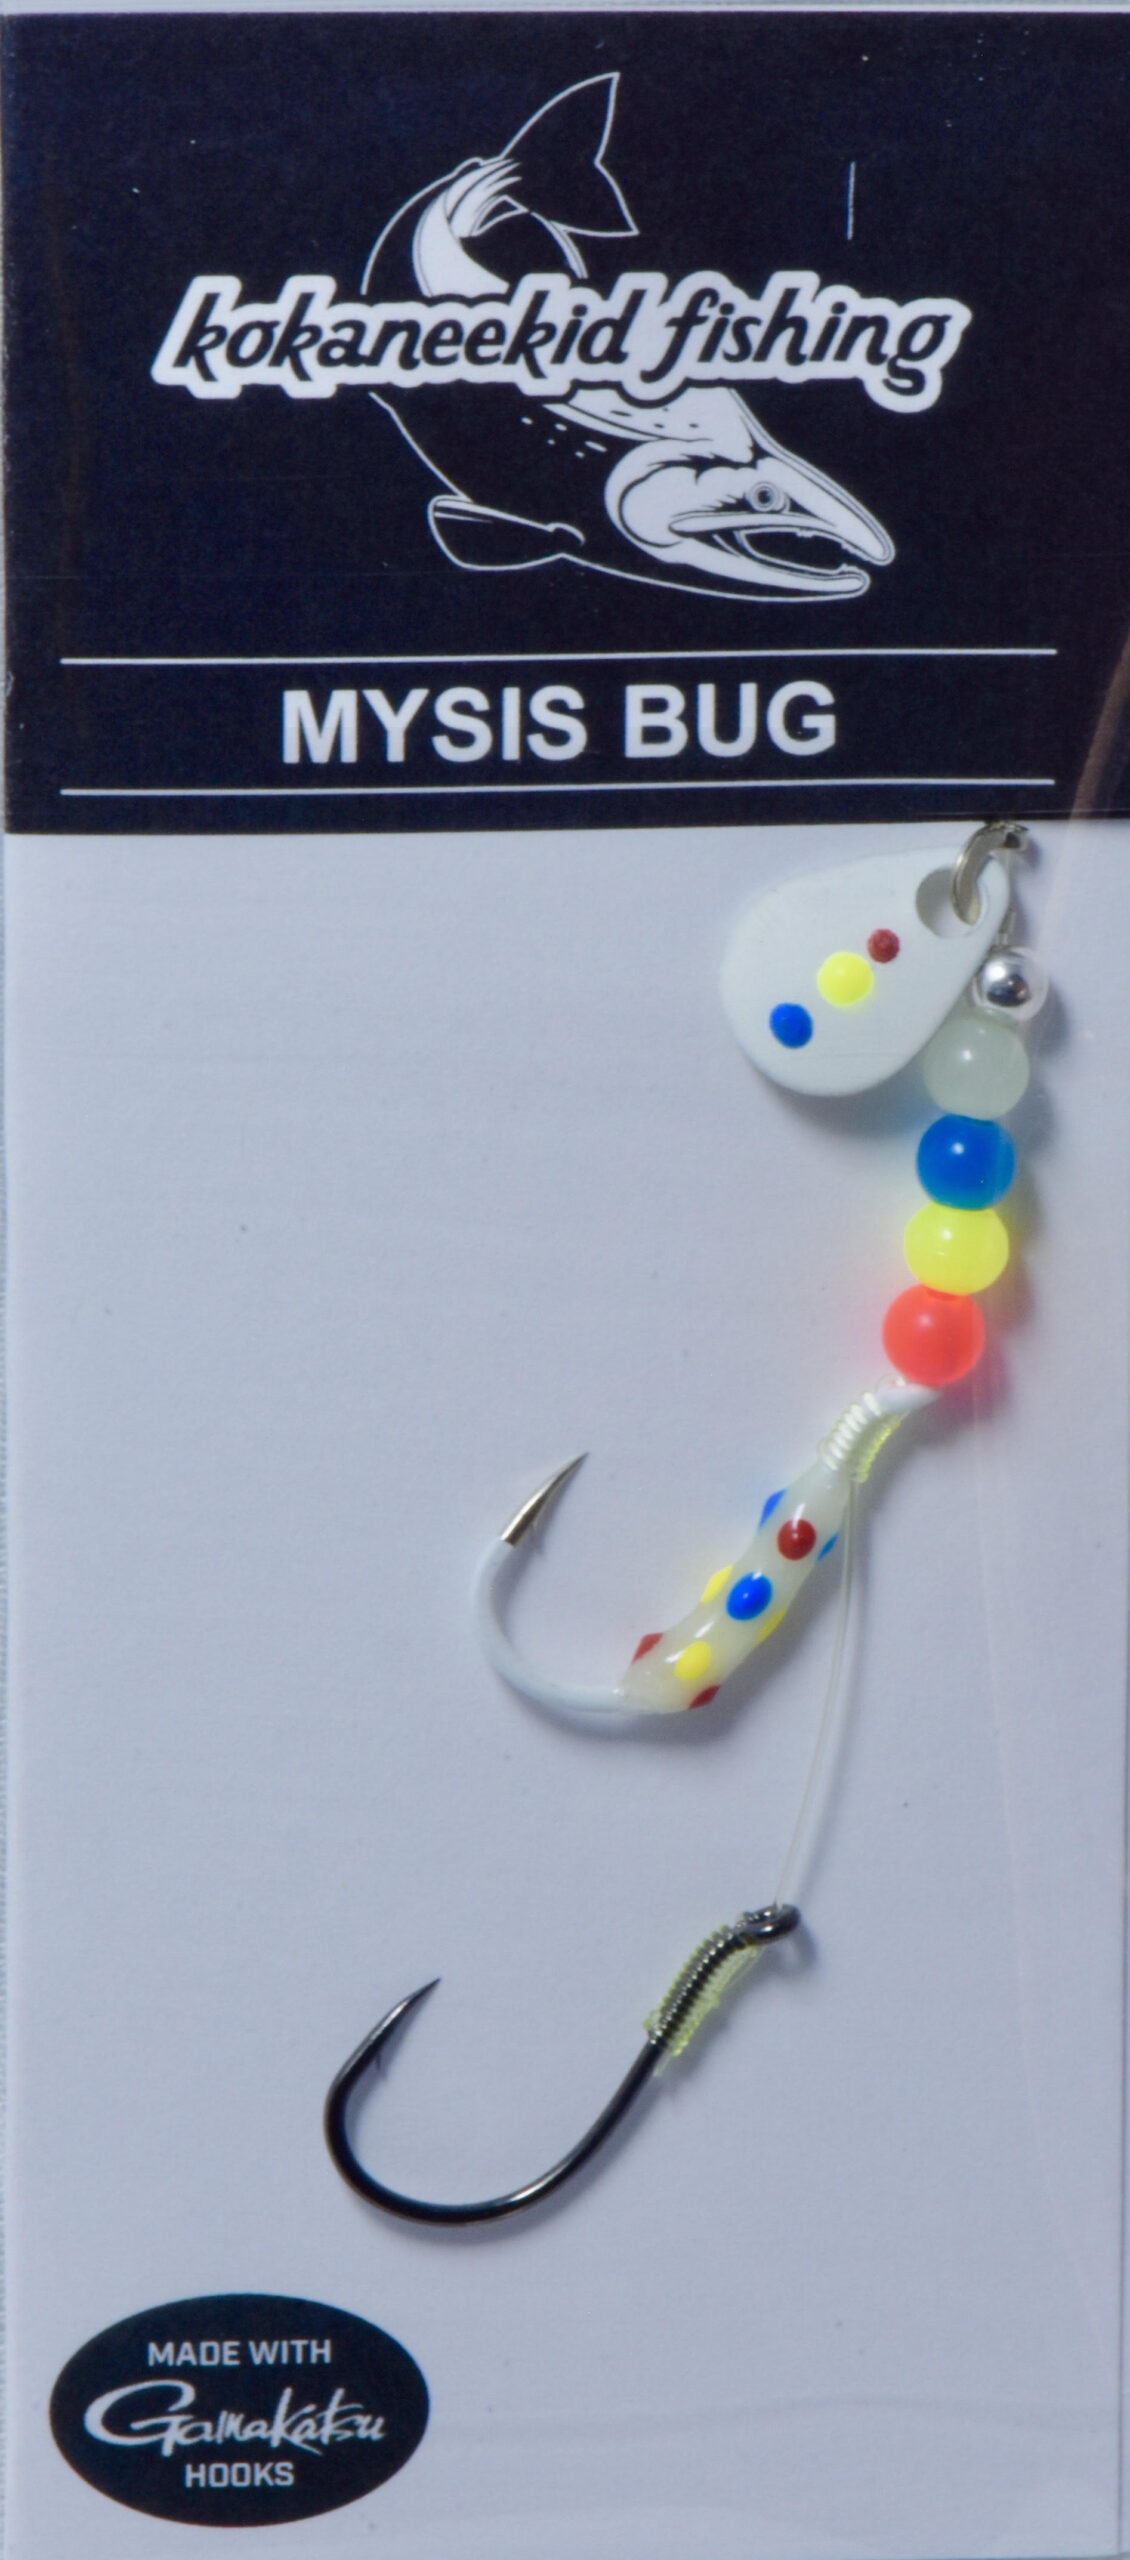 Mysis Bug Wonder Bread - Kokaneekid Fishing